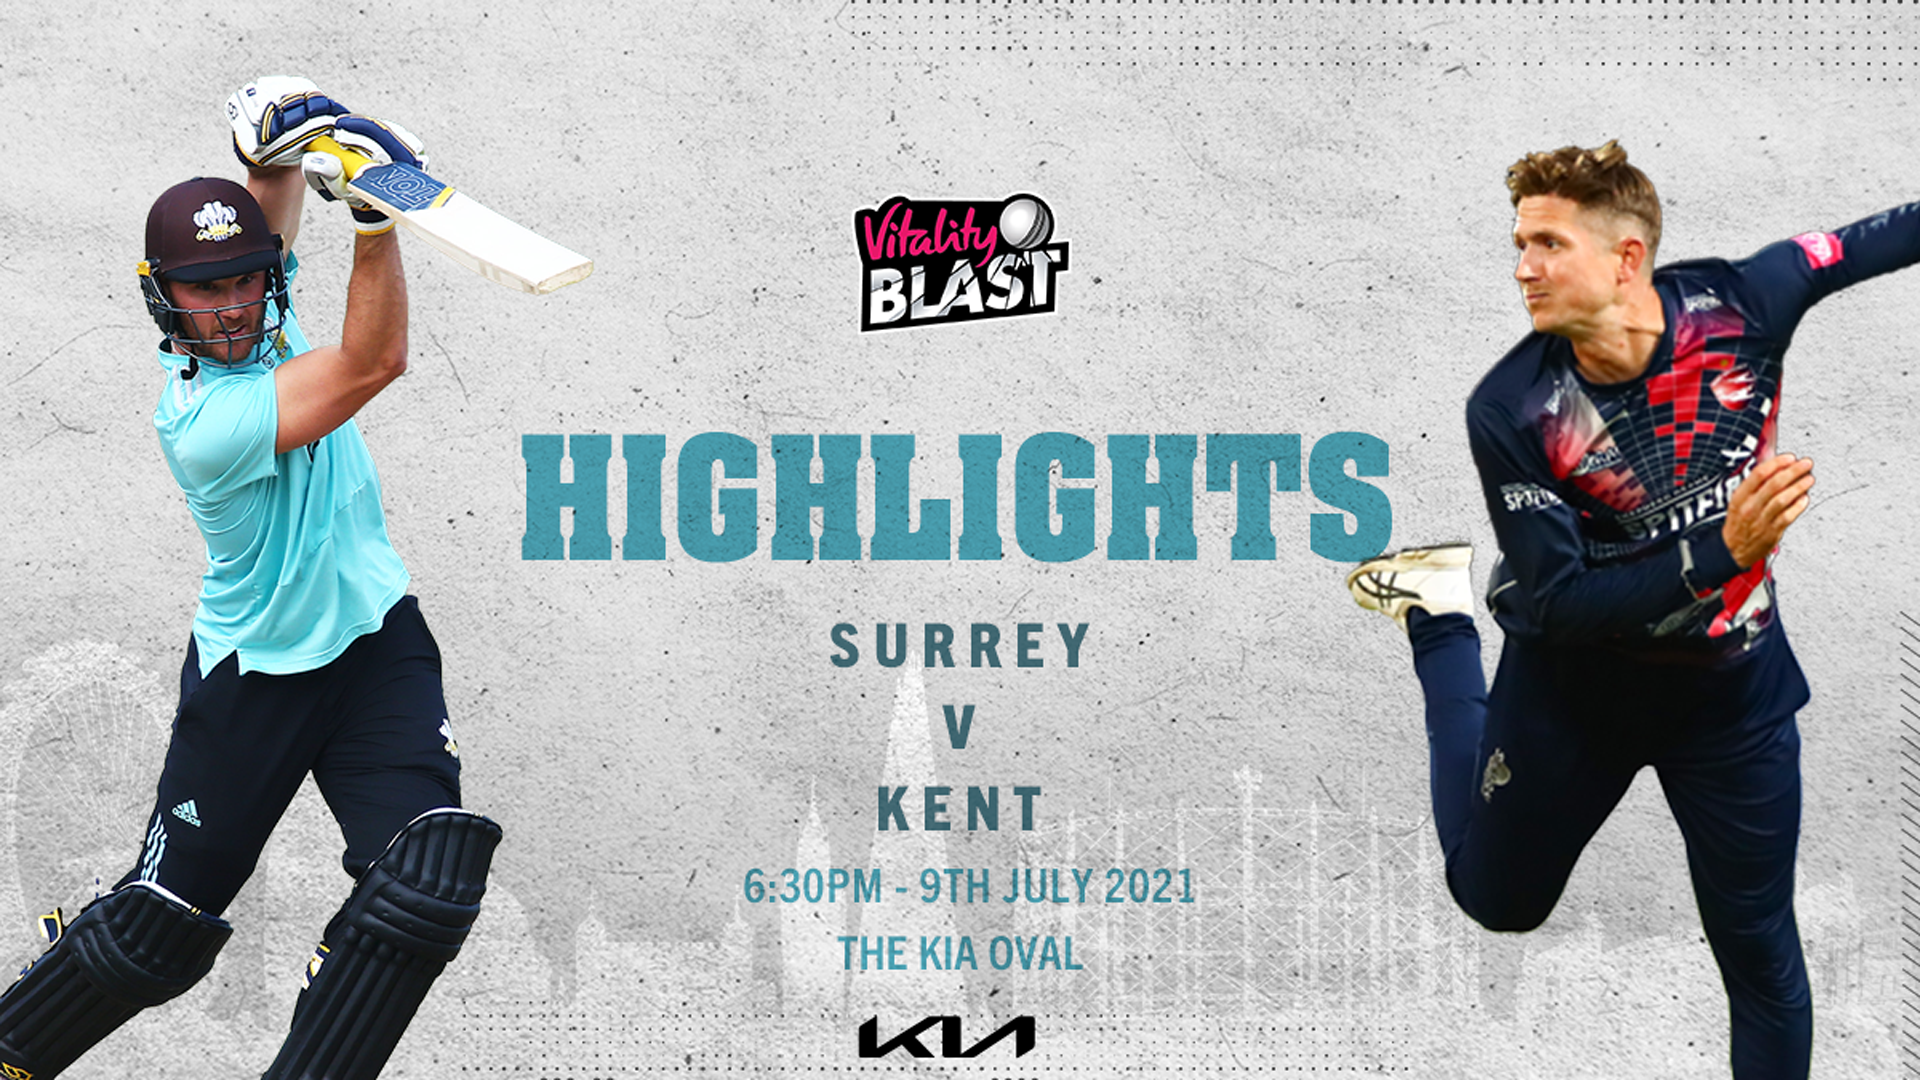 Blast highlights: Surrey v Kent